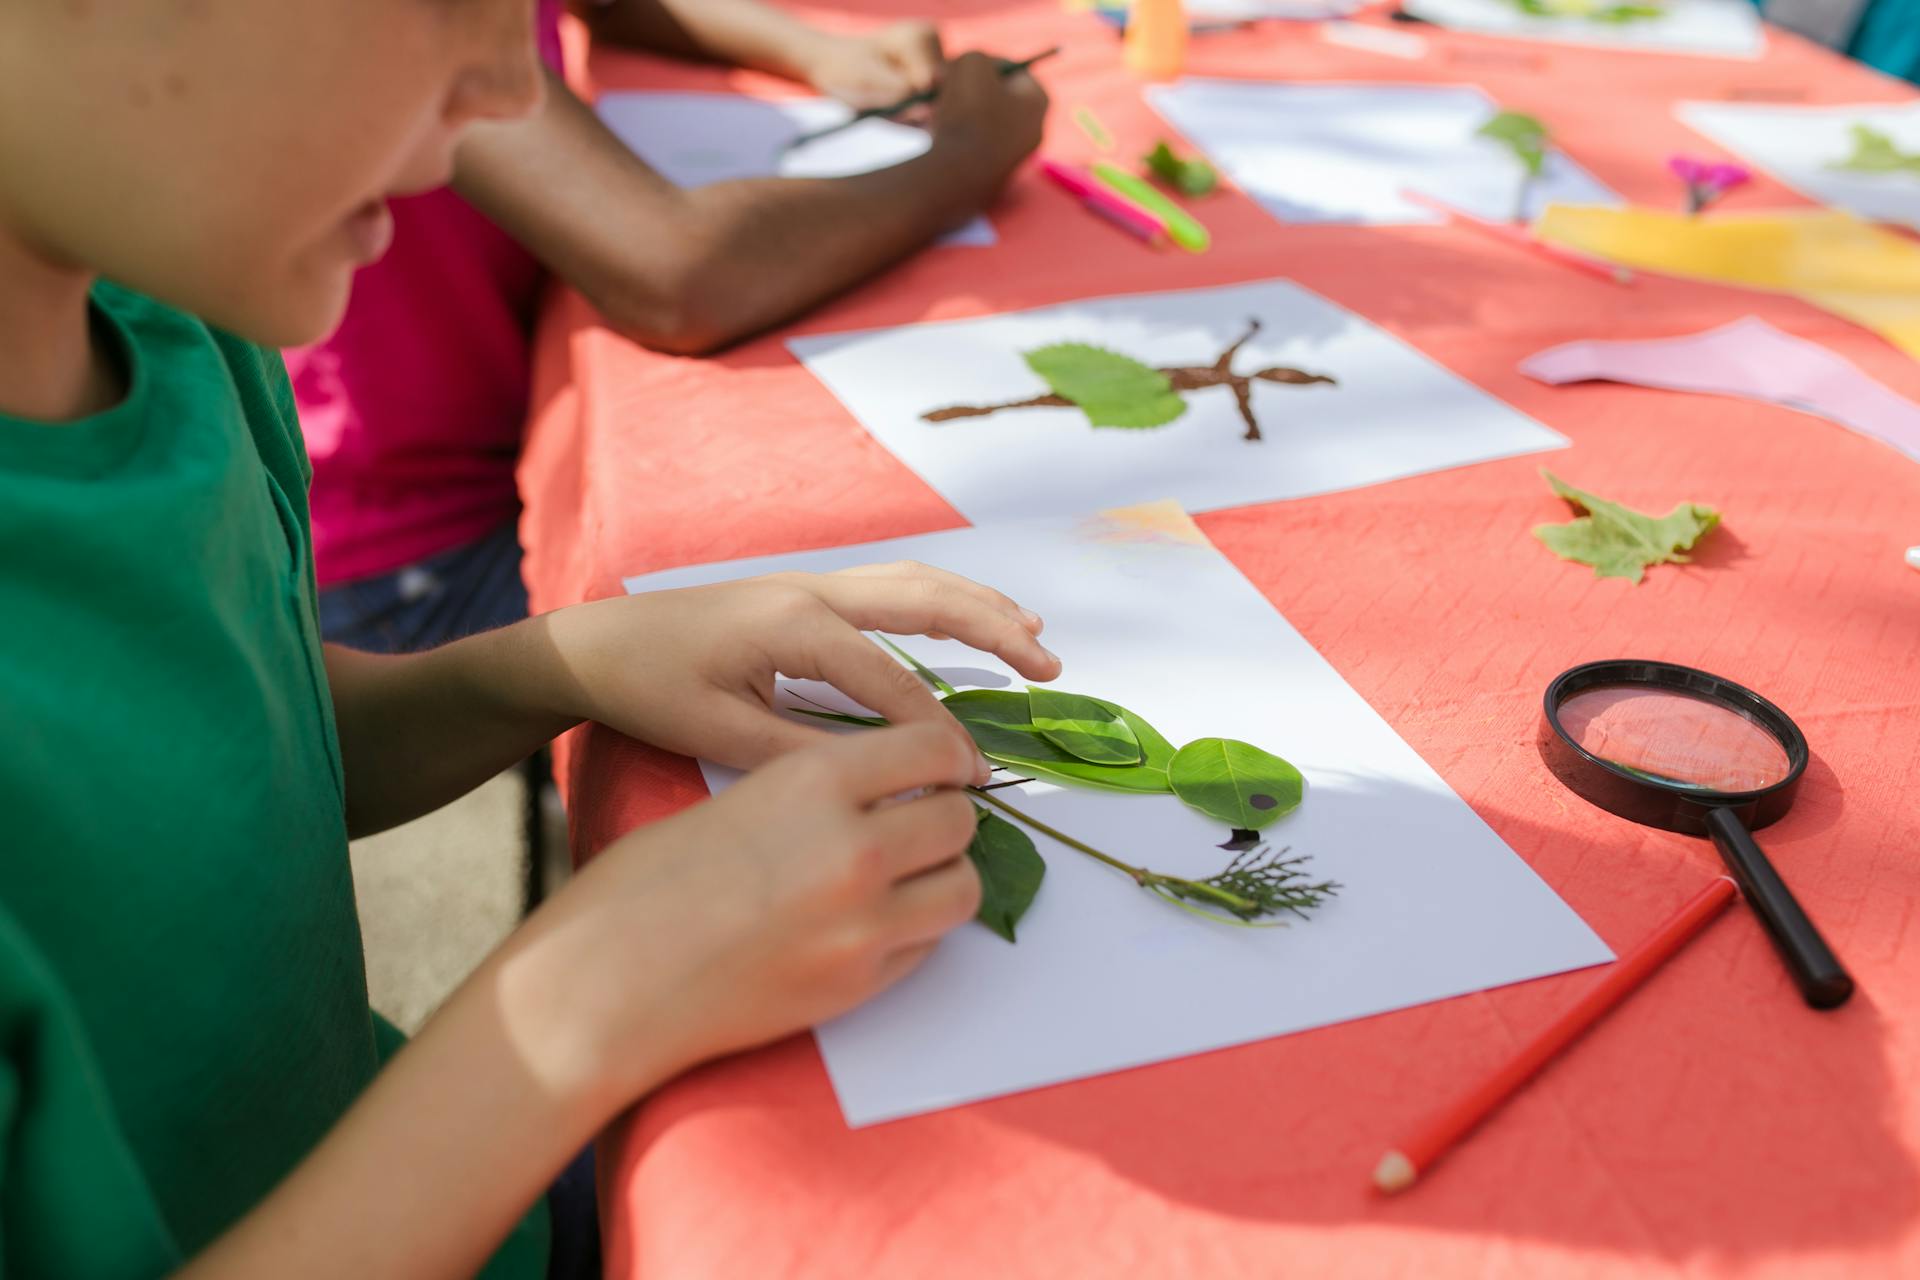 Children doing crafts | Source: Pexels